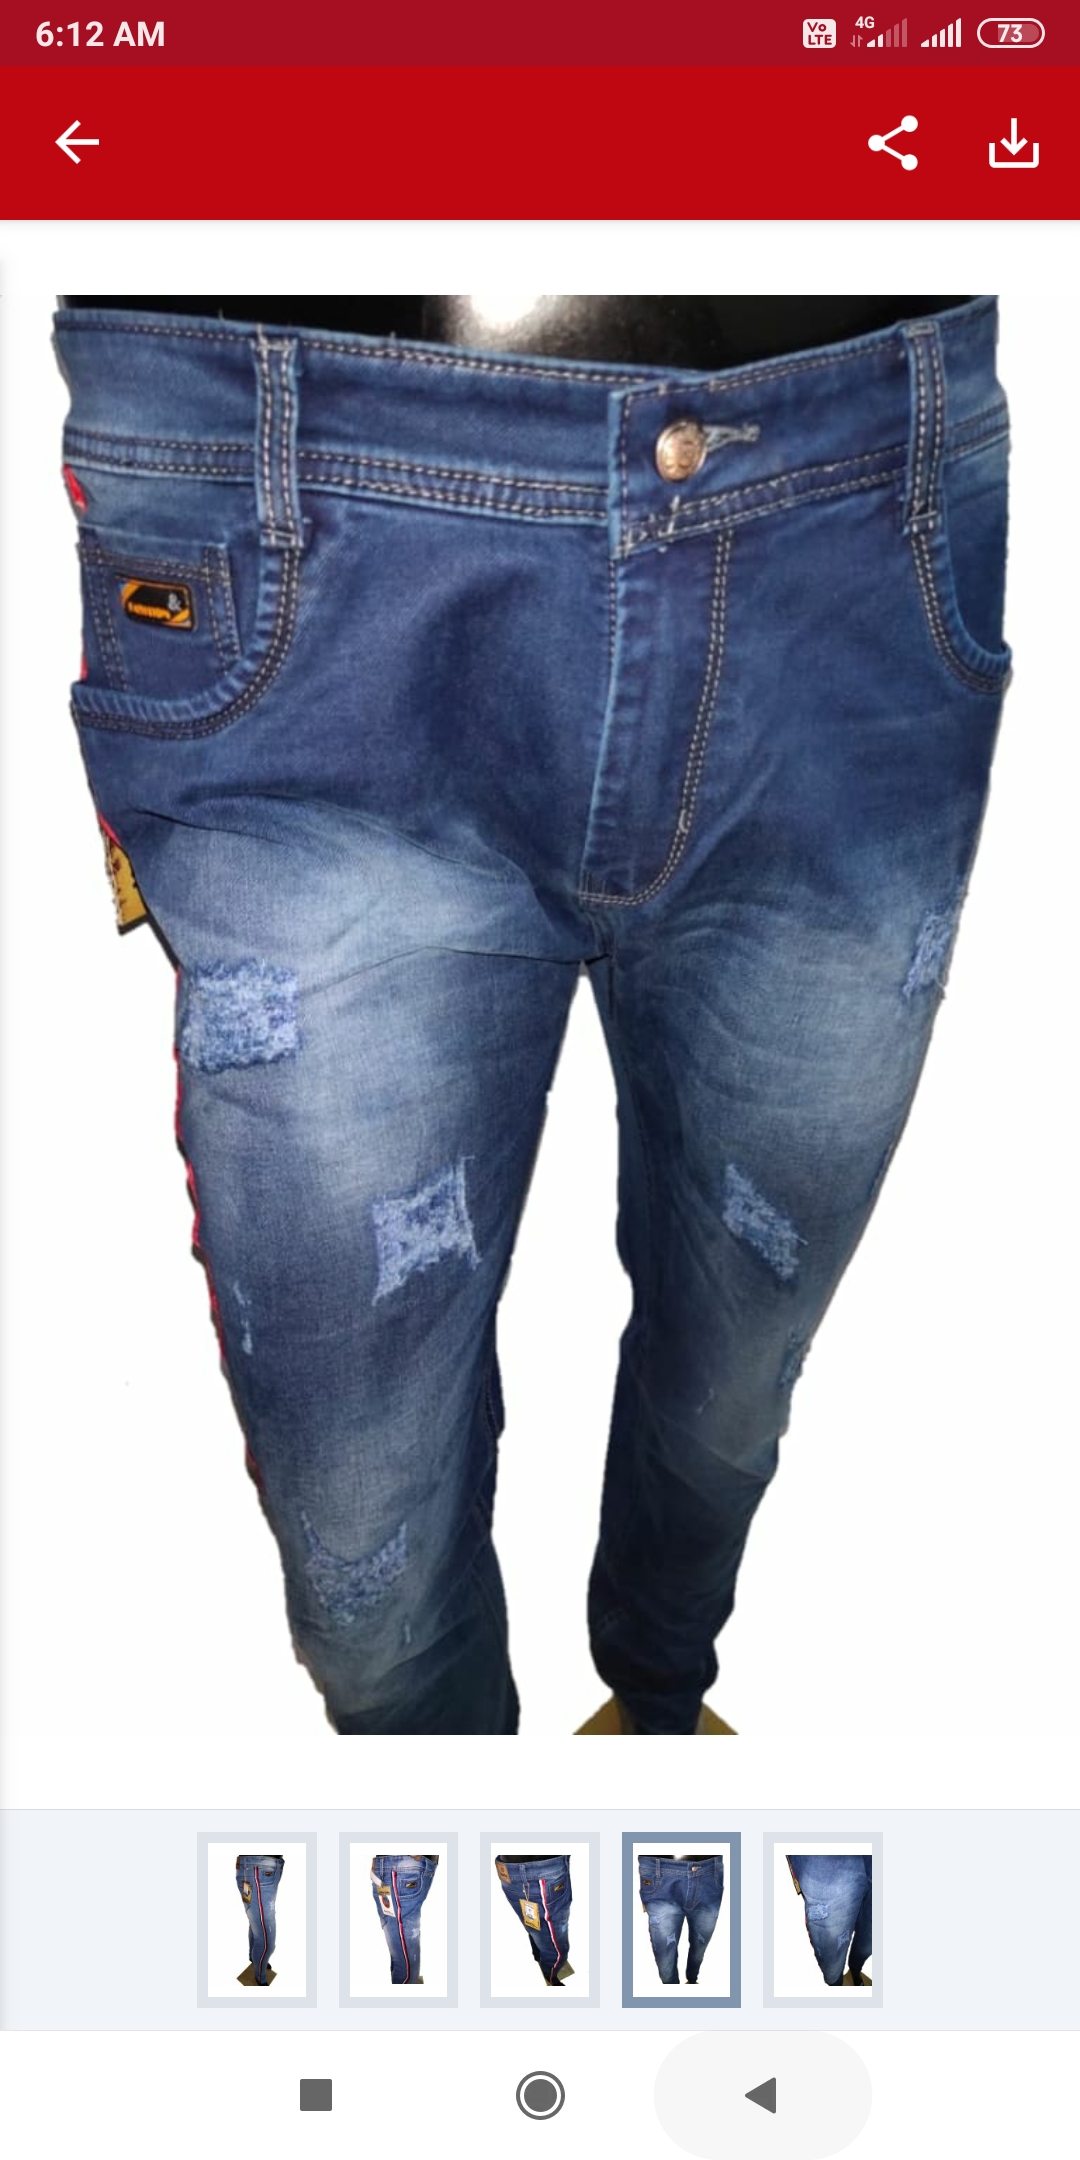 sparky damage jeans